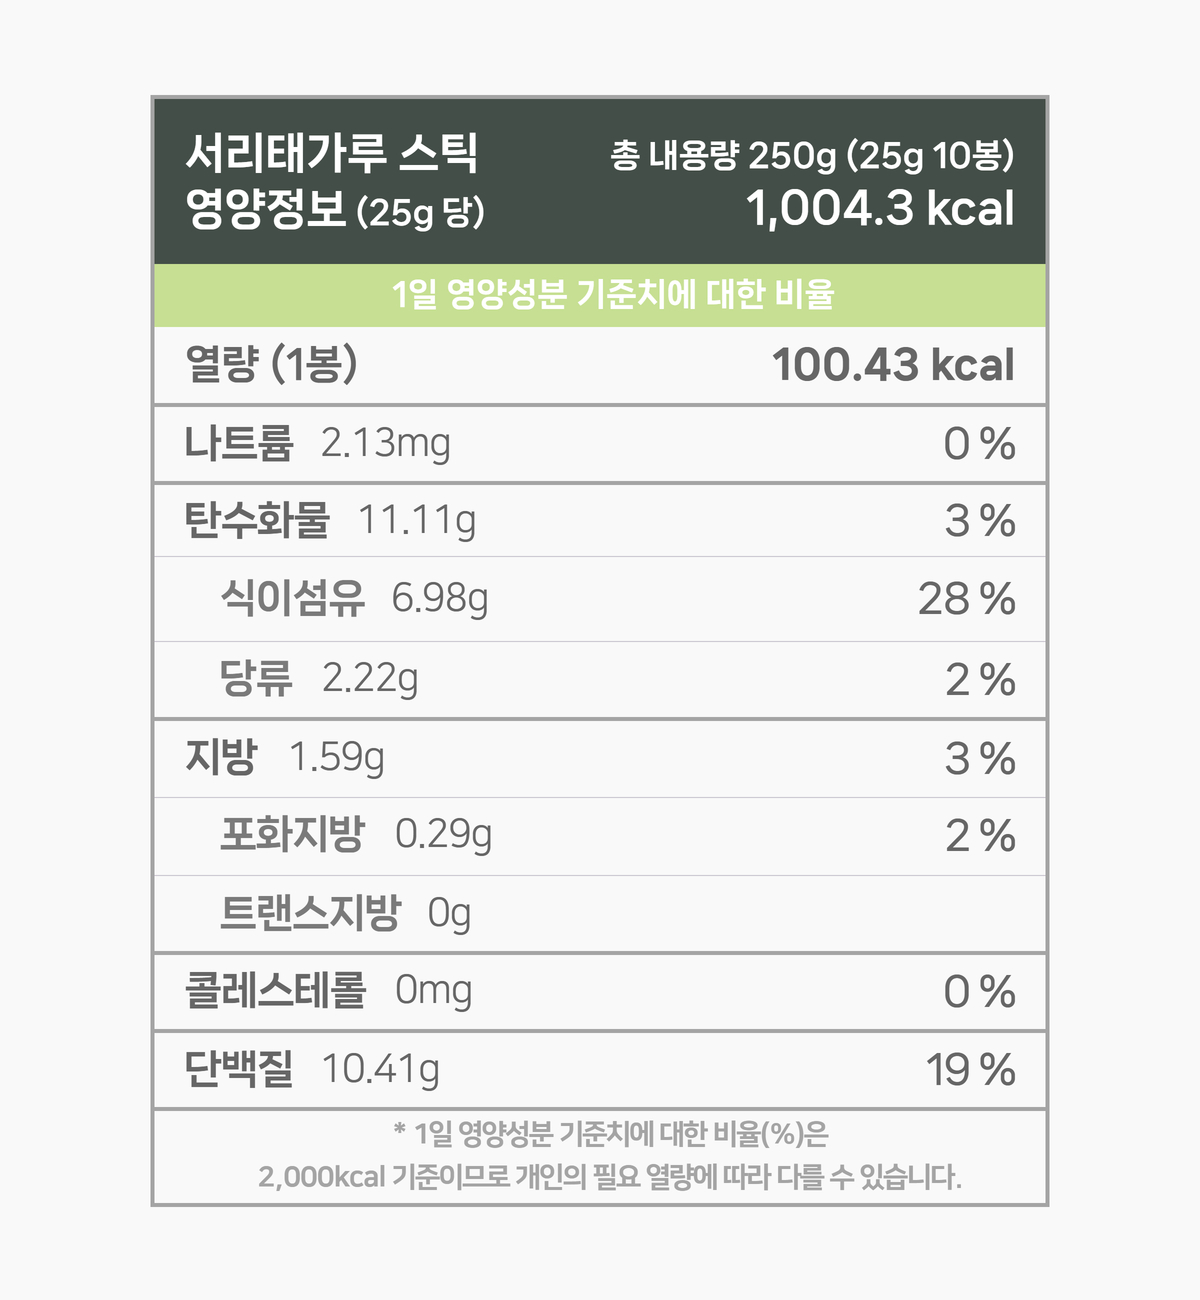 국산 서리태가루 500g 영양성분 표. 100g 기준 401.73 칼로리. 나트륨은 8.55mg 함유되어 있으며 1일 영양성분 기준치에 대한 비율은 0%입니다. 탄수화물 44.46g 14%, 당류 8.88g 9%, 지방 6.37g 12%, 포화지방 1.16g 8%, 단백질 41.64g 76%. 1일 영양성분 기준치에 대한 비율은 2000칼로리 기준이므로 개인의 필요한 열량에 따라 다를 수 있습니다.